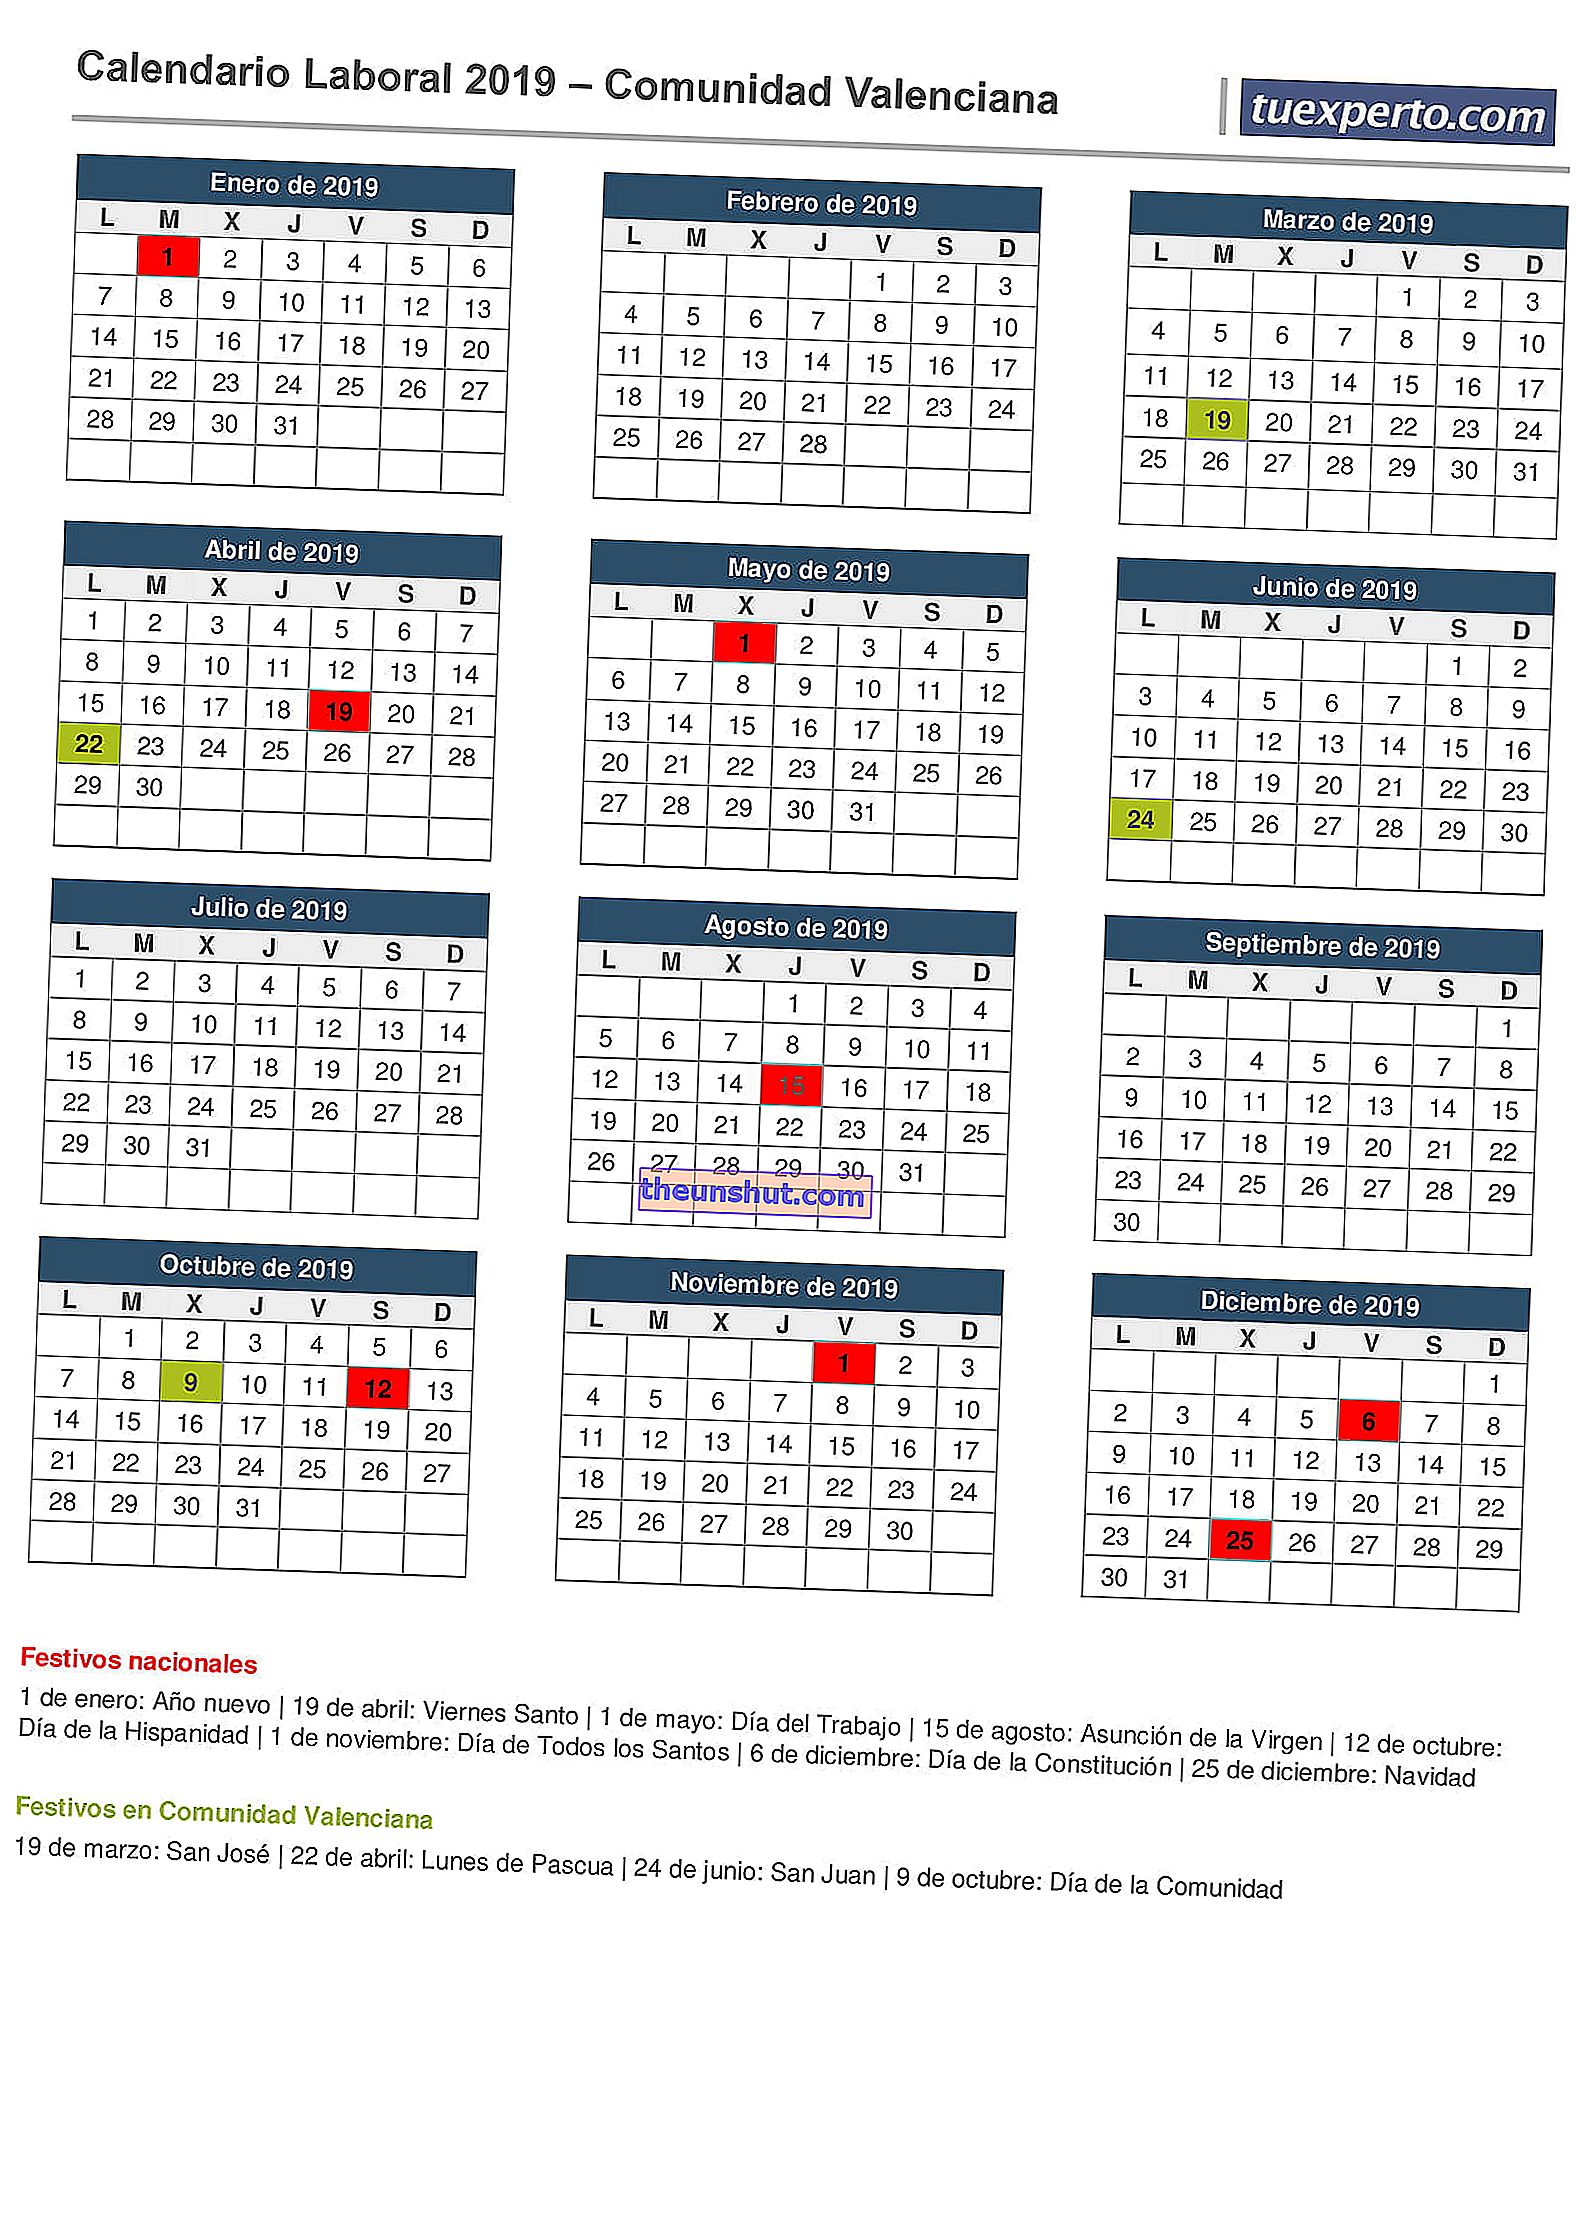 Calendario aziendale 2019